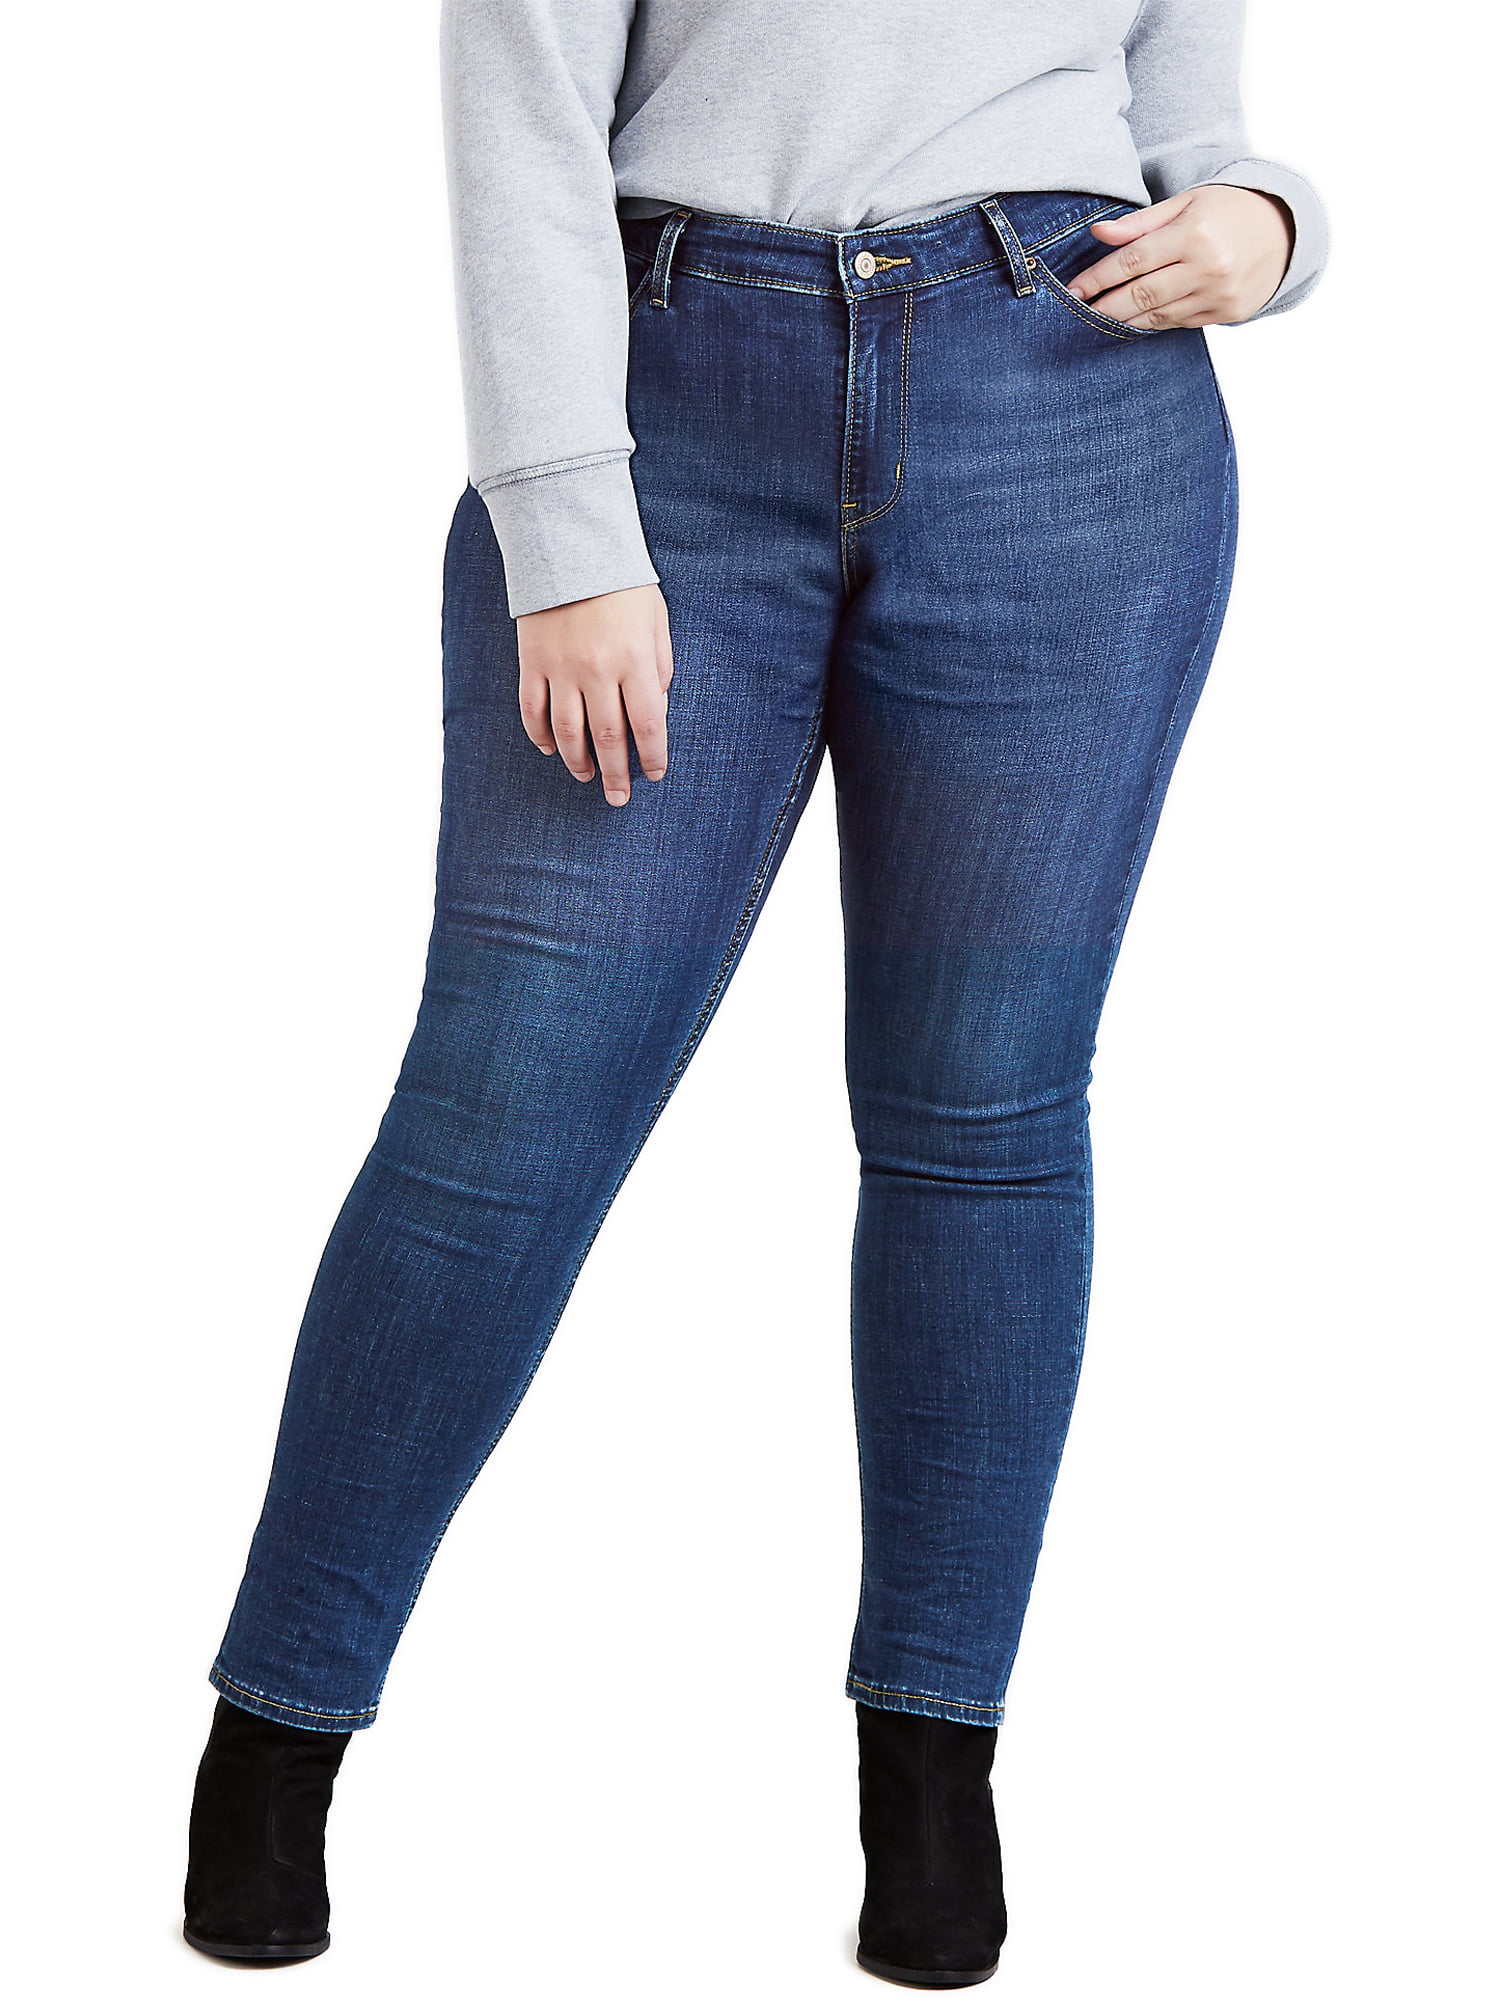 Actualizar 101+ imagen levi’s plus size stretch jeans